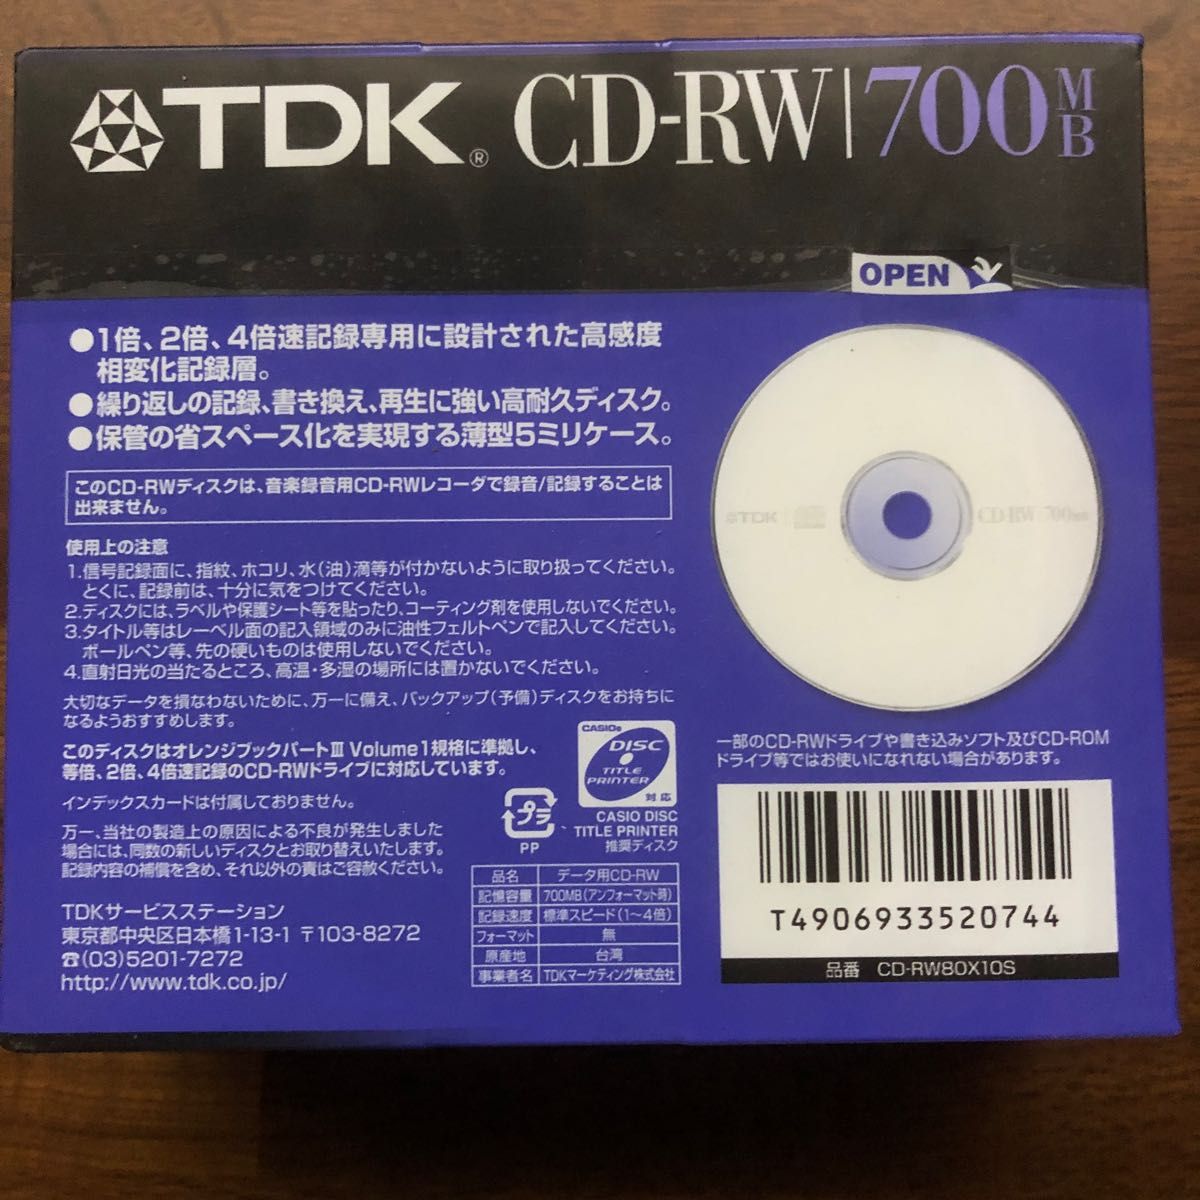 2021セール TDK CD-RWデータ用700MB 4倍速10mm厚ケース入り CD-RW80S